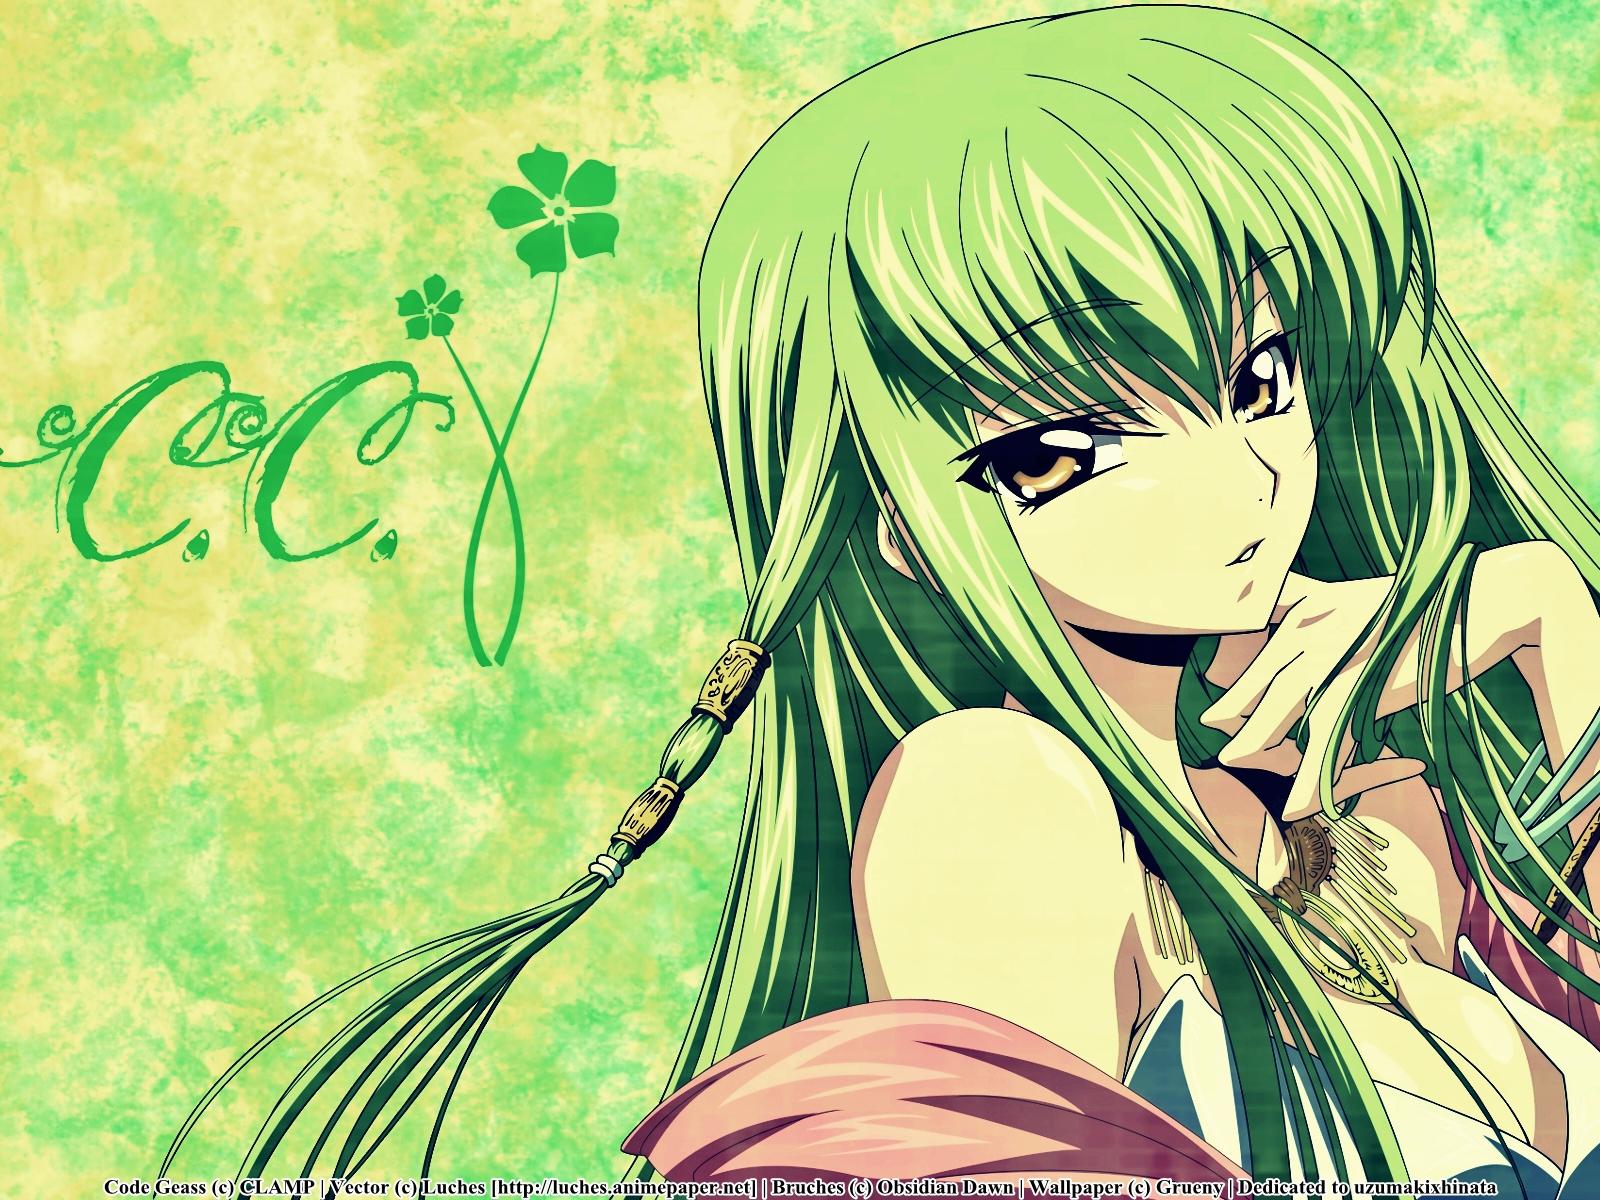 壁纸 : 动漫女孩, 原始人物, 绿色的头发, Hasumi 3000x2250 - yucelcan - 1913849 - 电脑桌面壁纸 ...